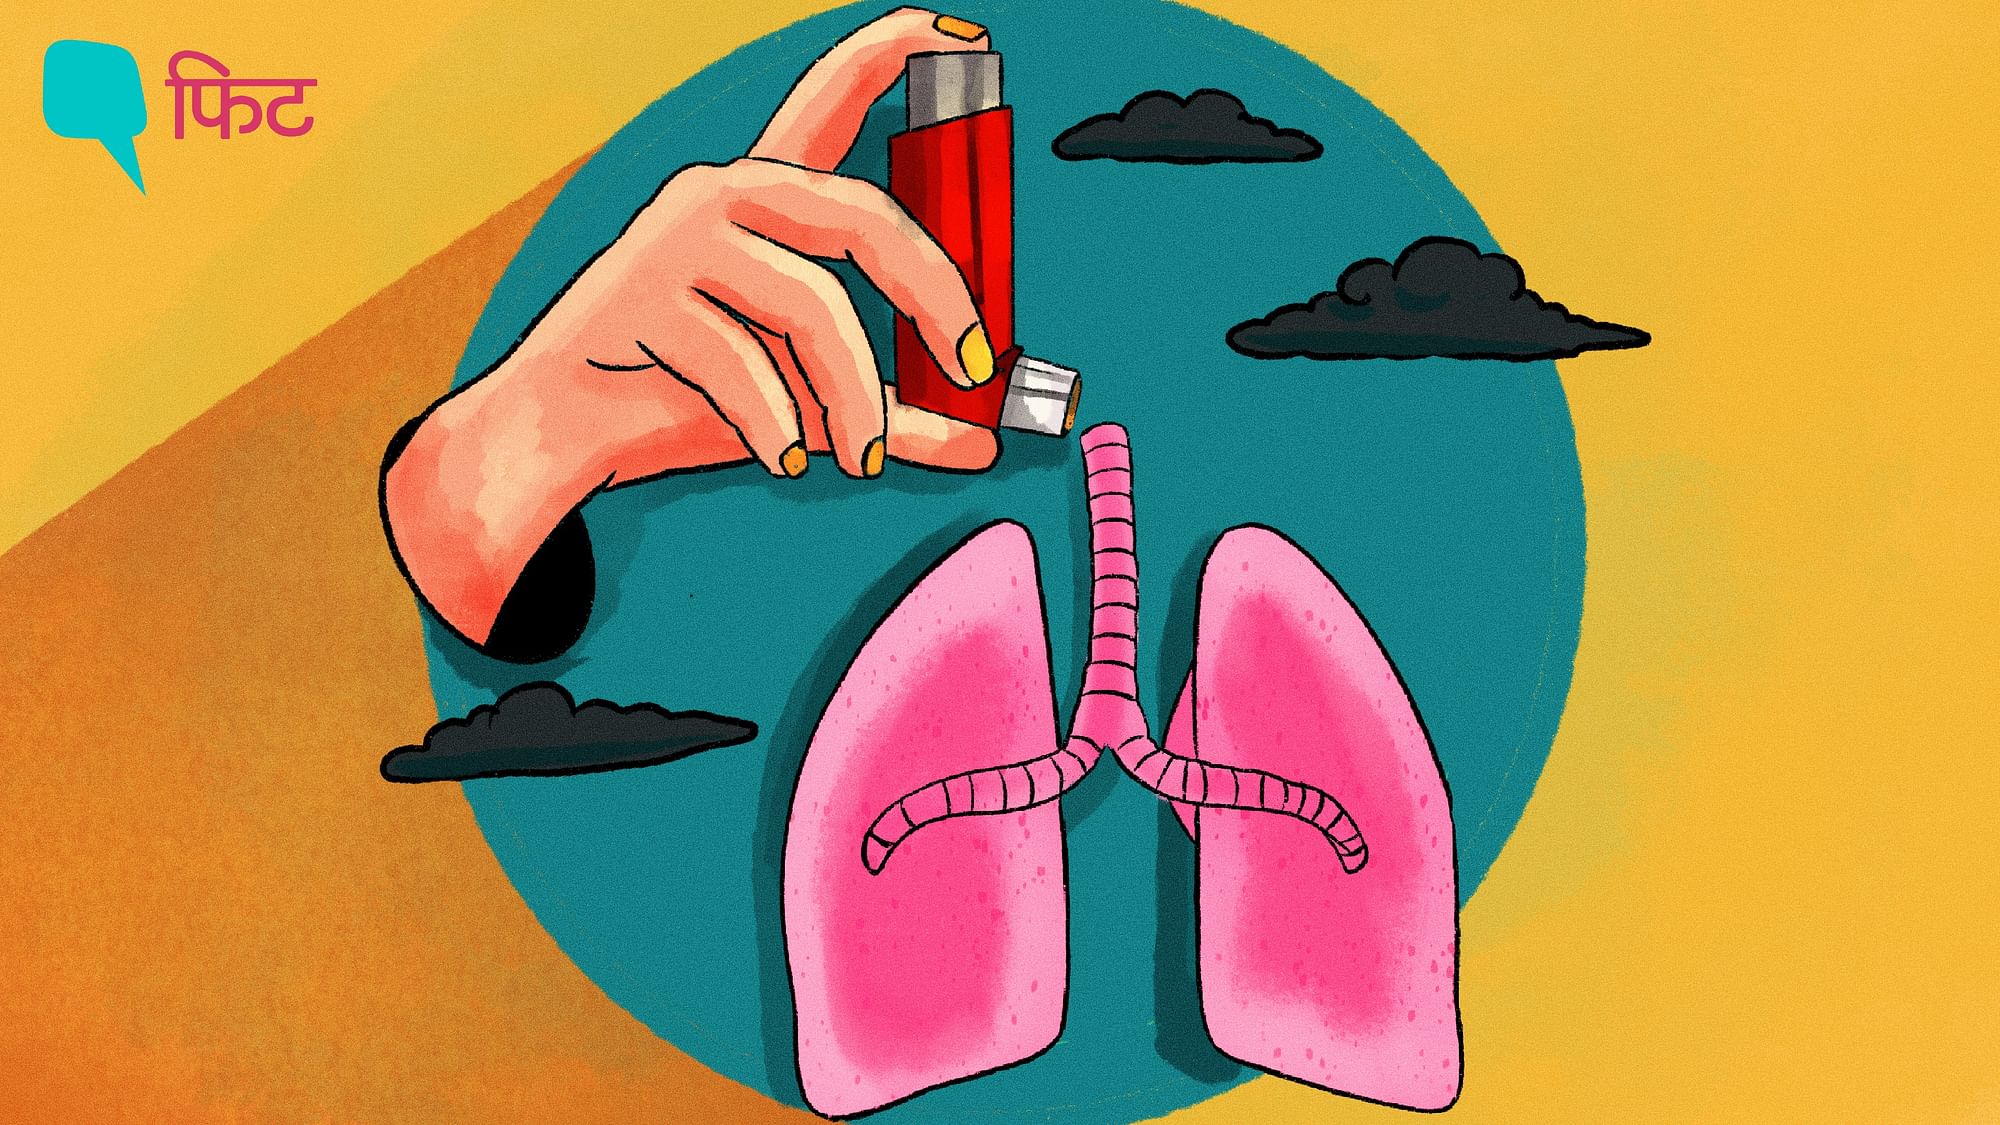 <div class="paragraphs"><p>World Asthma Day| इस दिन को मनाया जाता है लोगों में अस्थमा के प्रति जागरूकता लाने के लिए&nbsp;&nbsp;</p></div>